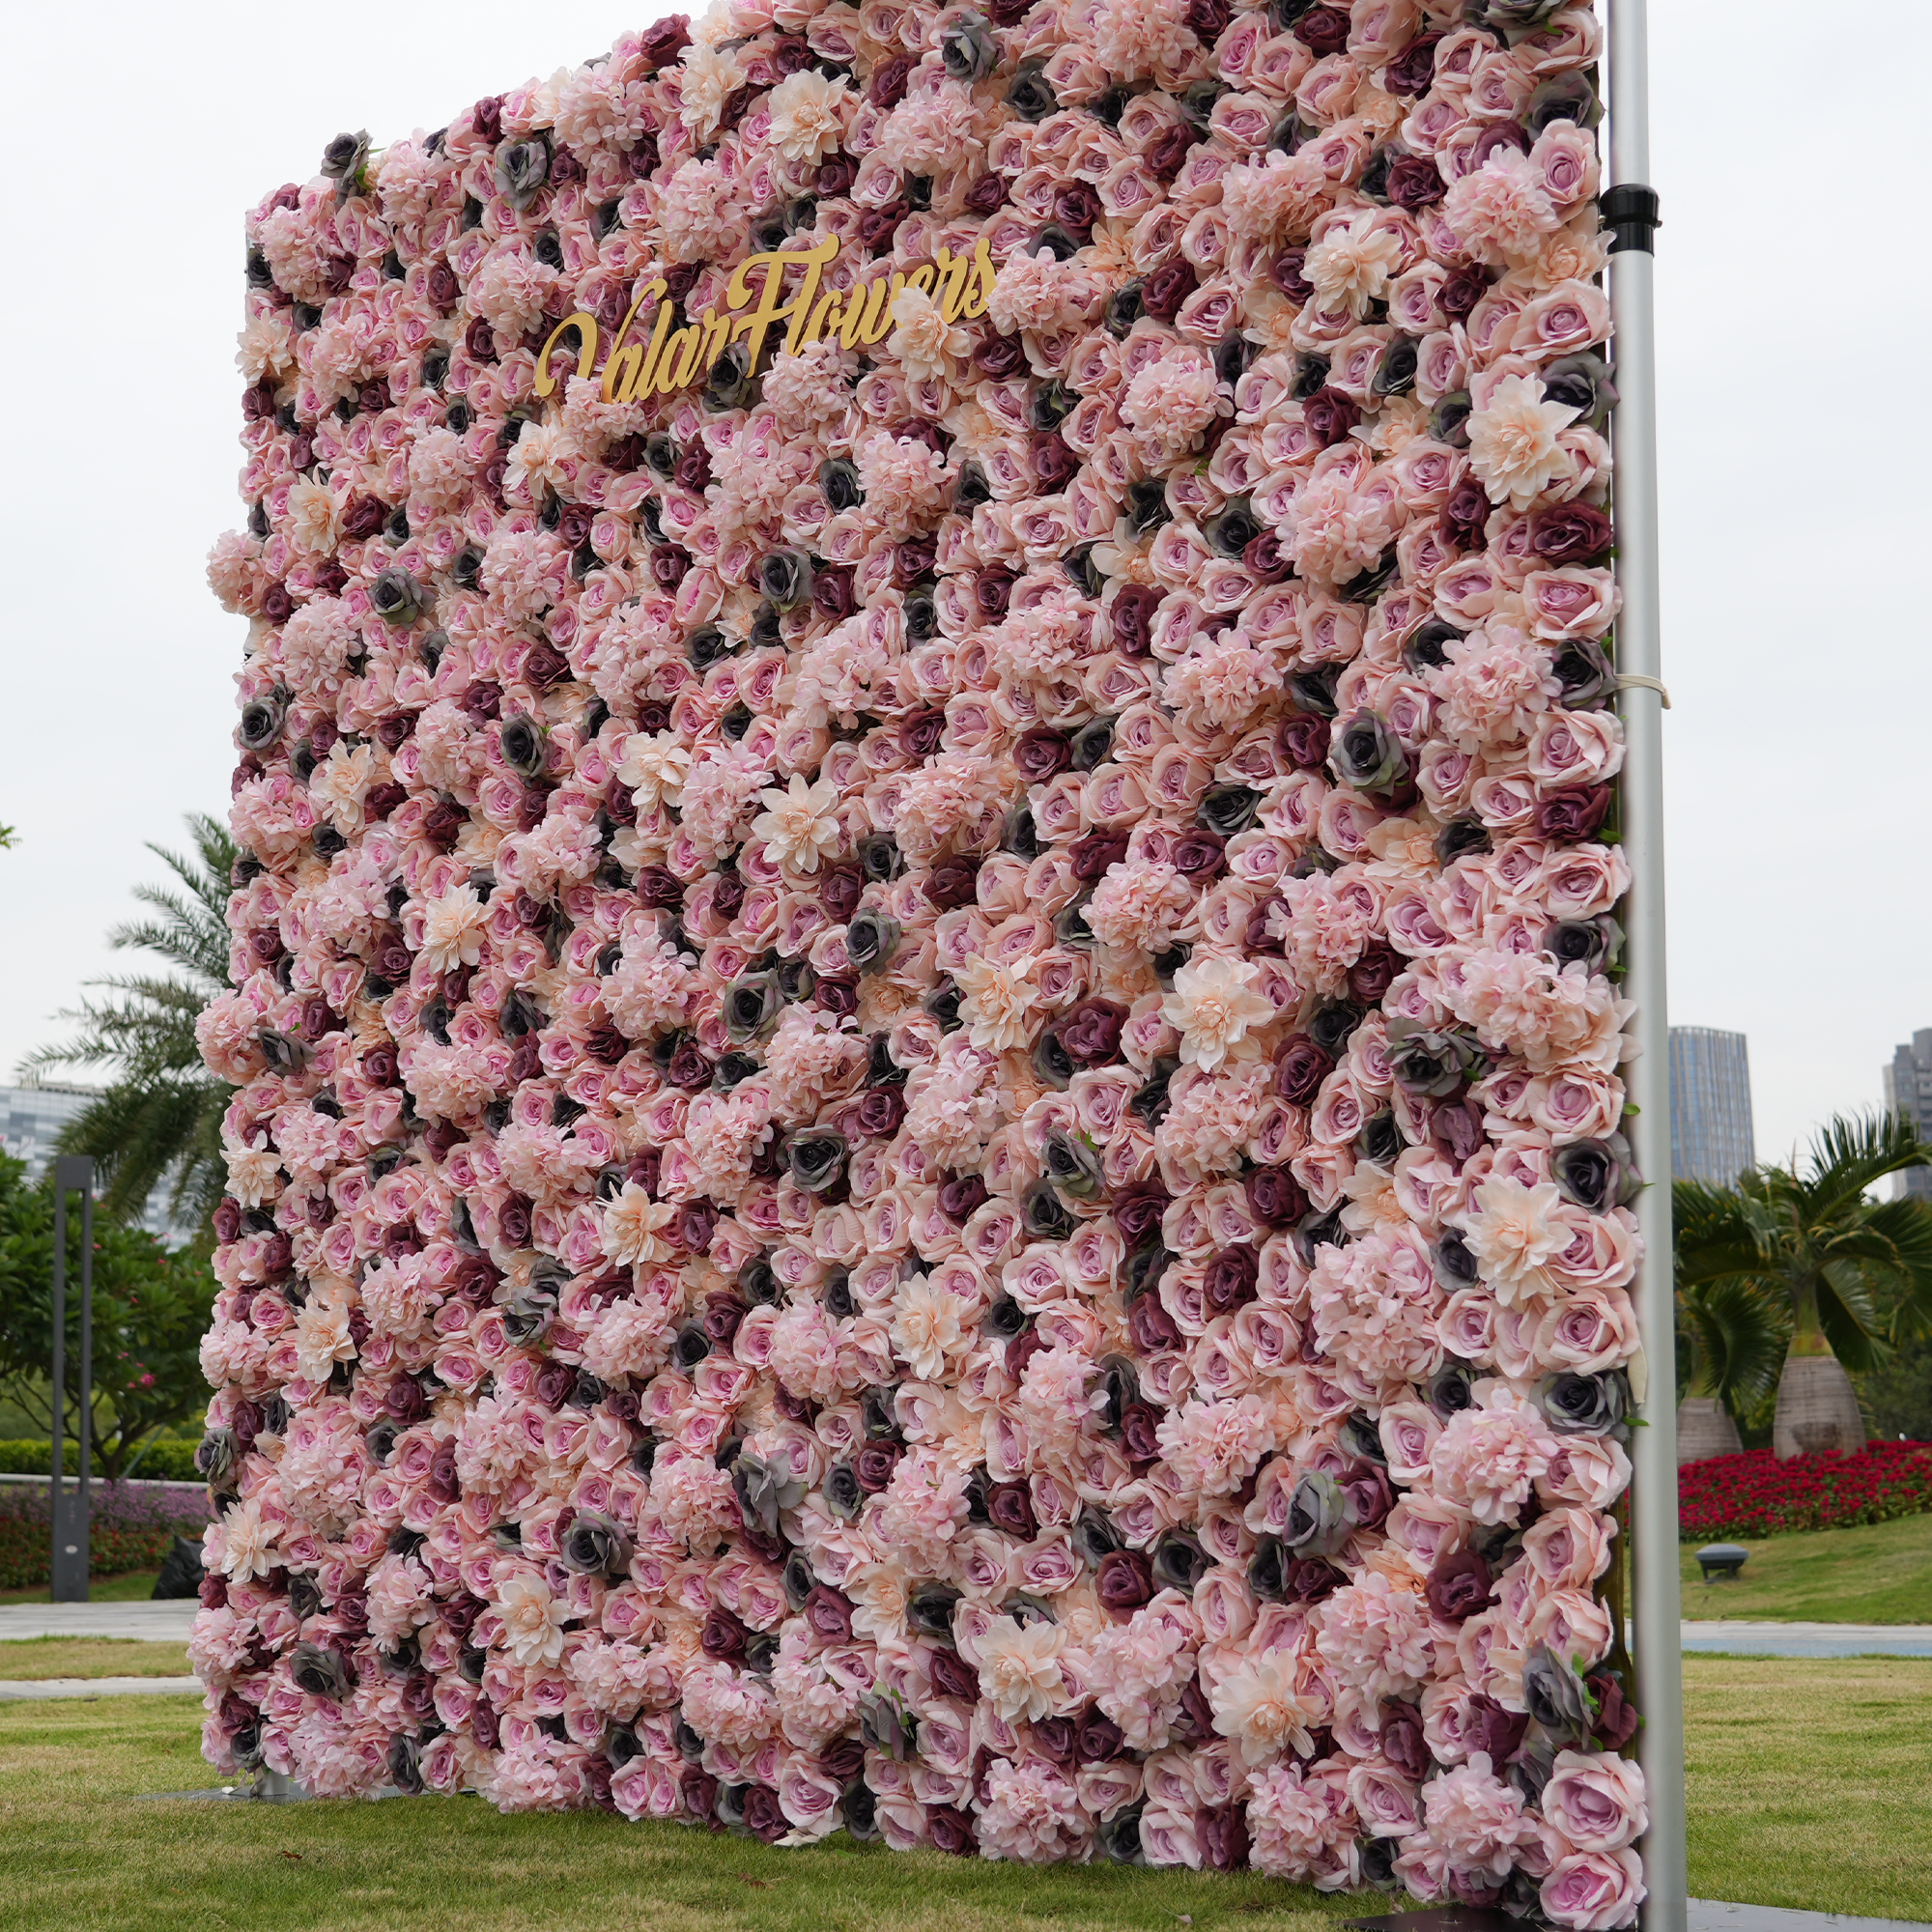 زهور الفالار لفة النسيج الاصطناعي المختلط البني والوردي زهرة رمادي خلفية جدار الزفاف ، ديكور حزب الأزهار ، الحدث